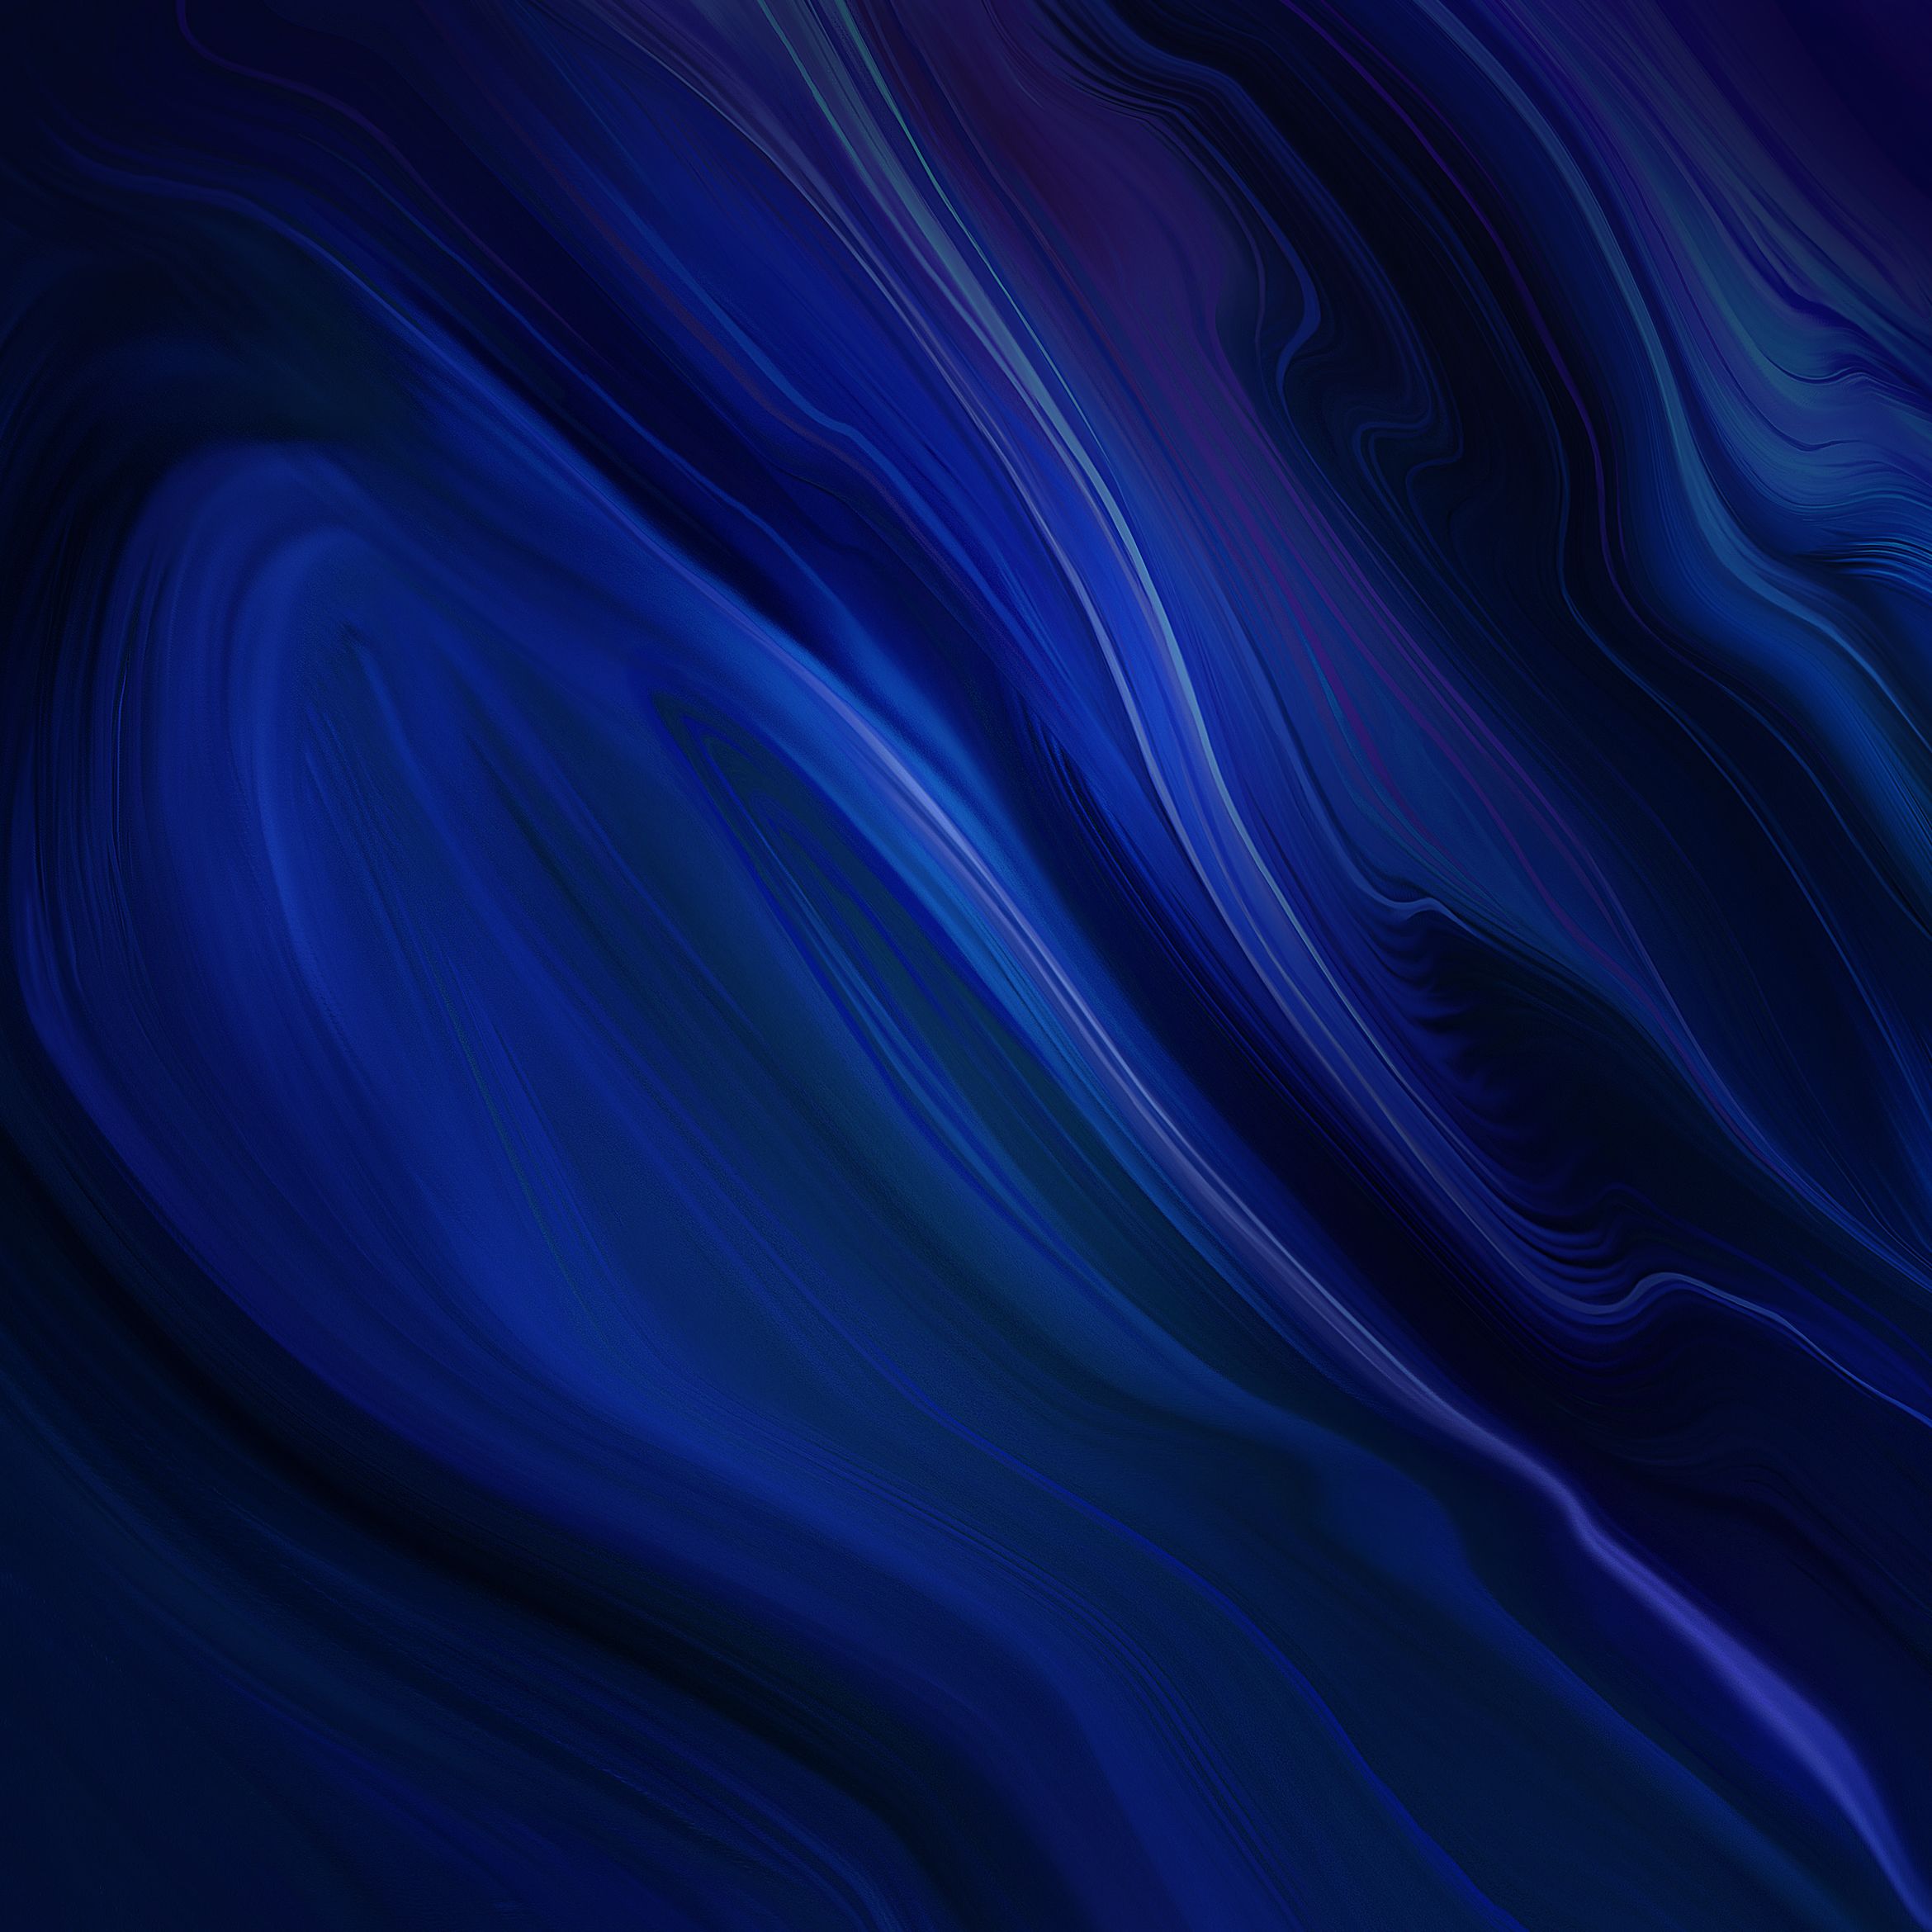 huawei stock fondo de pantalla,azul,agua,azul eléctrico,azul cobalto,púrpura